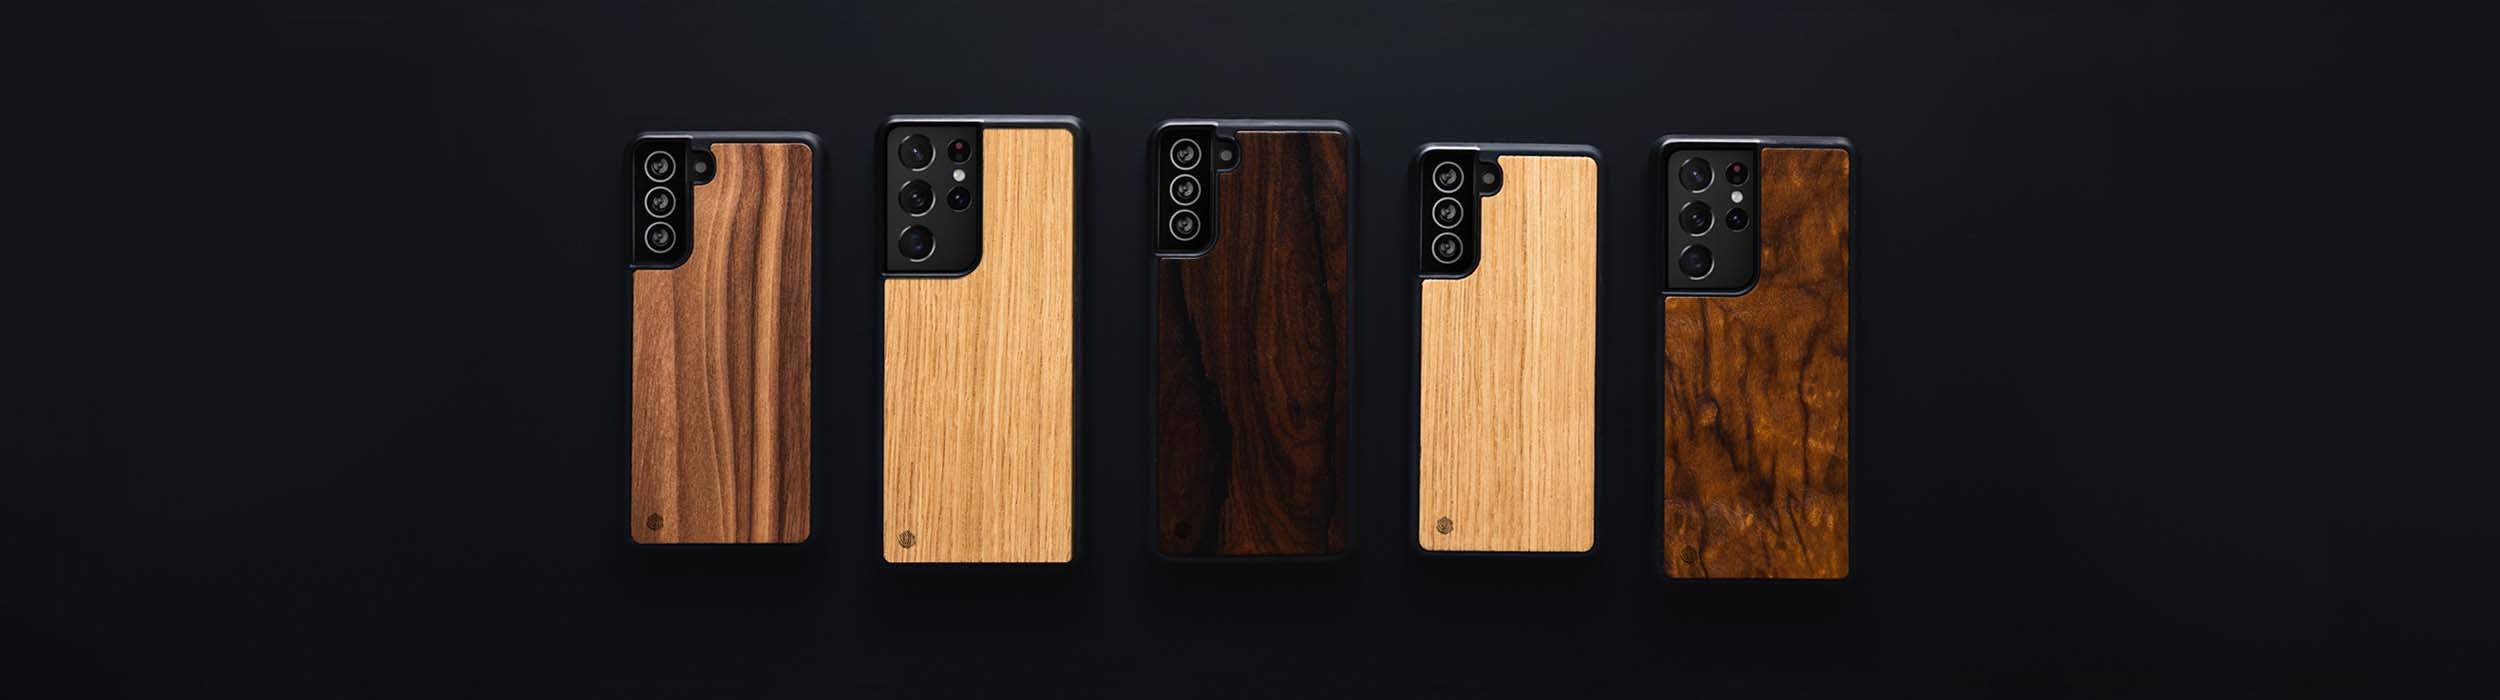 Samsung Galaxy S20 Handyhüllen aus Holz